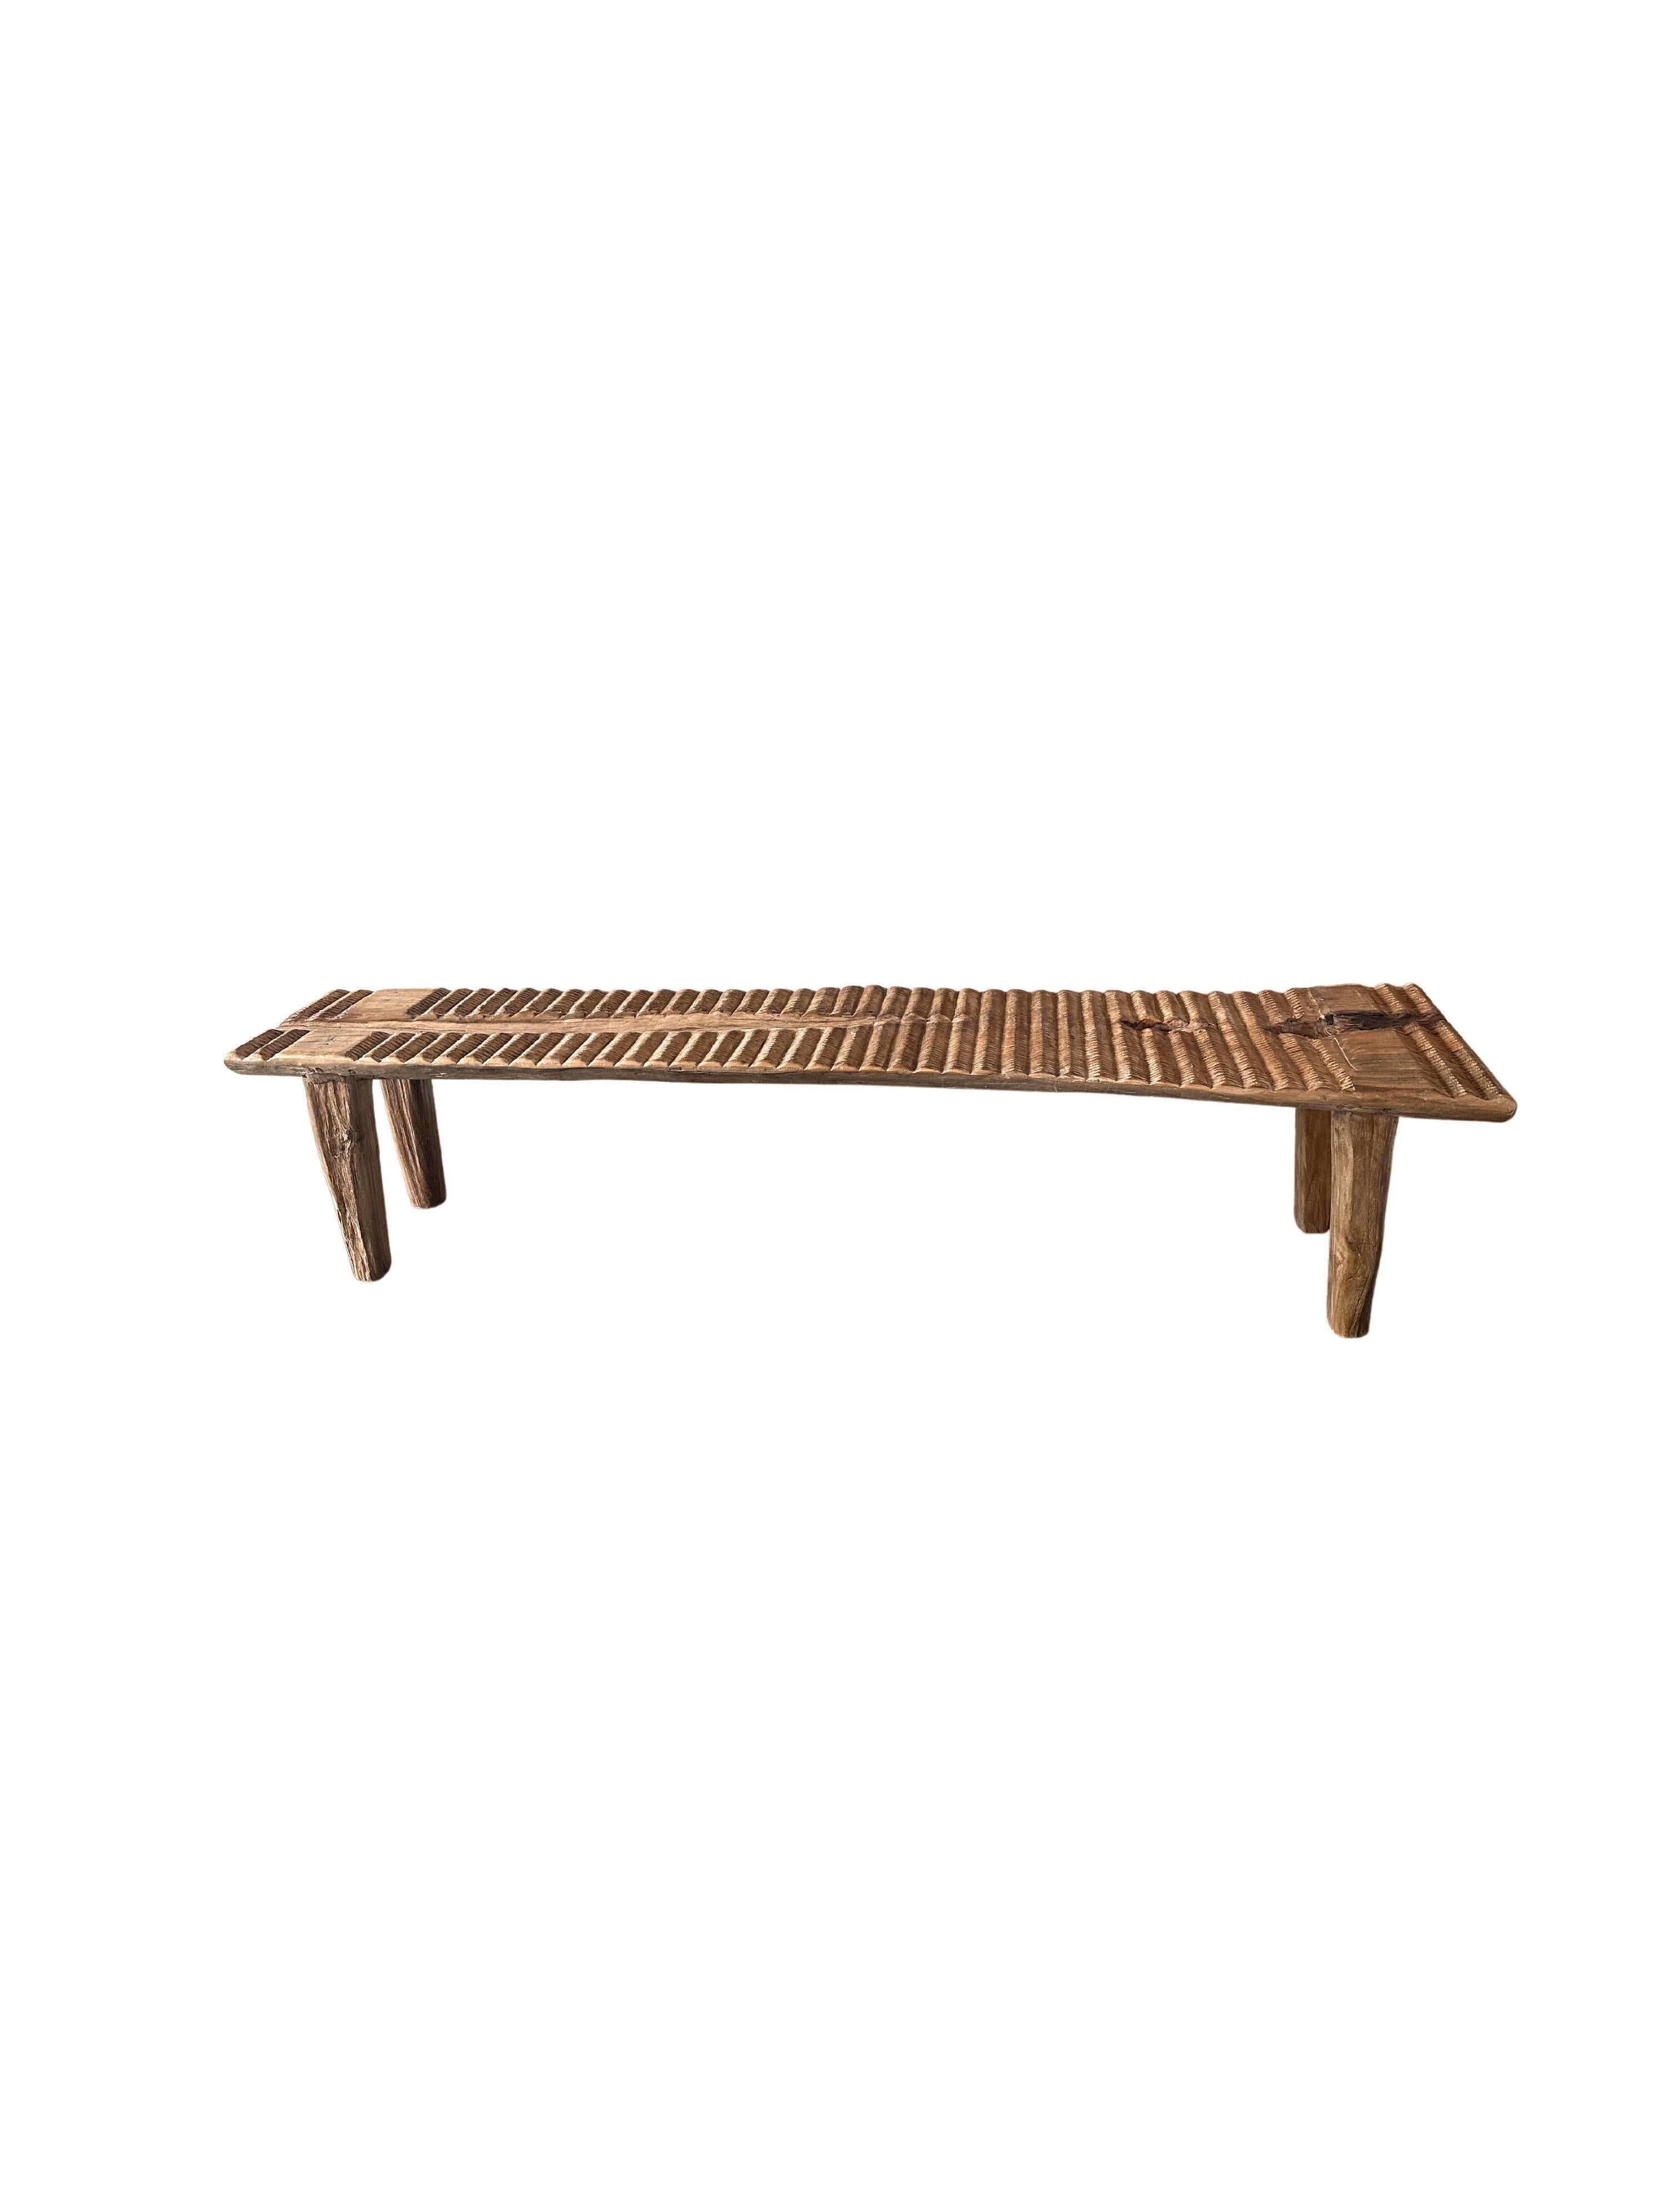 Teak Wood Sculptural Long Bench, Carved Detailing, Modern Organic For Sale 3